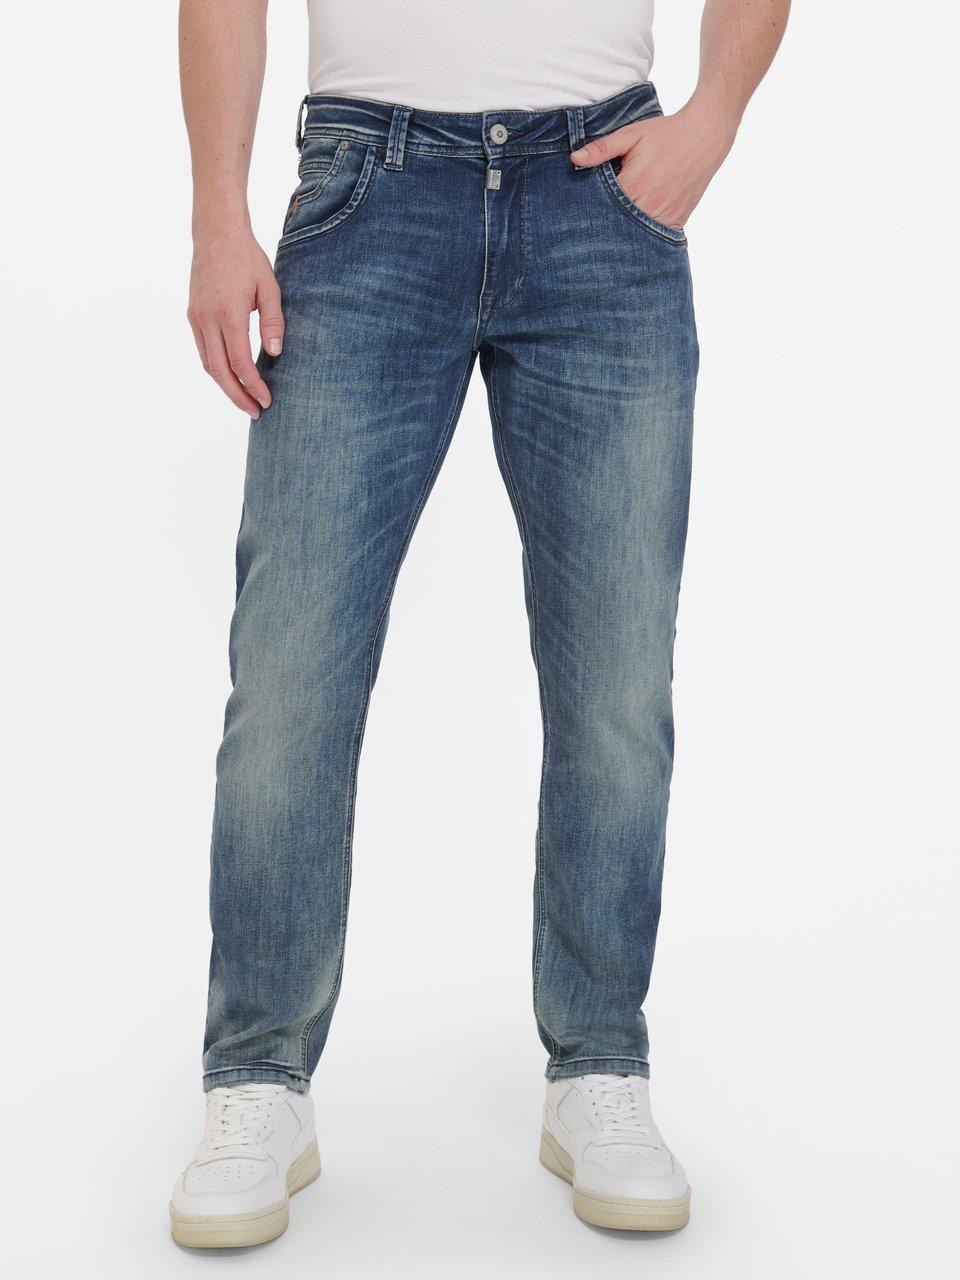 Timezone - Le jean, longueur inch 32